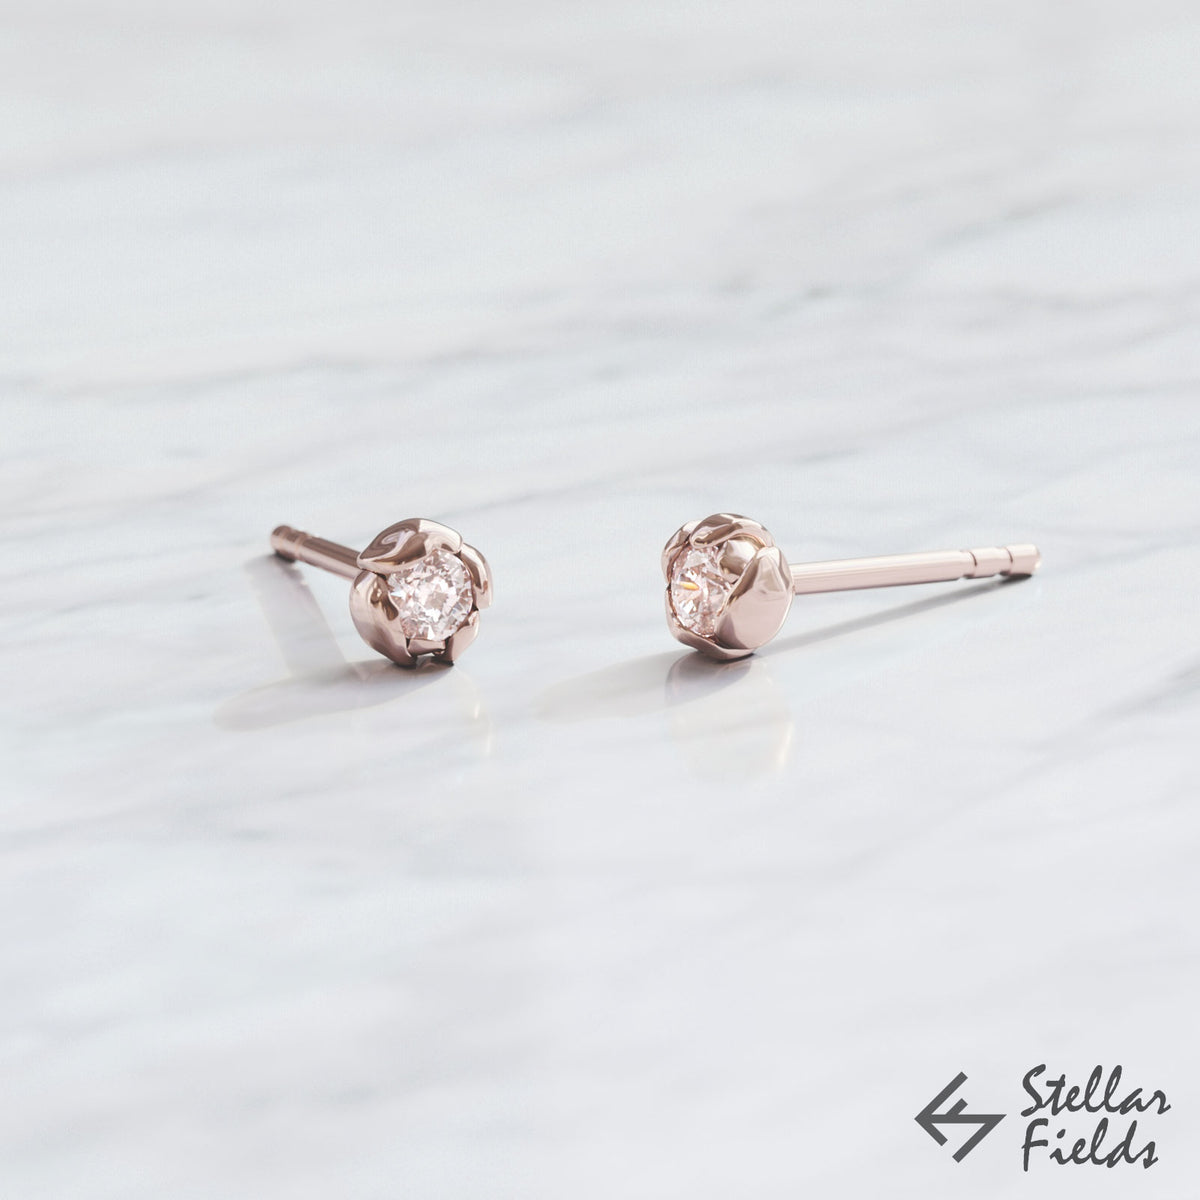 Canadian diamond rose floral earrings studs dainty petite modern 14k rose Gold Stellar Fields Jewelry